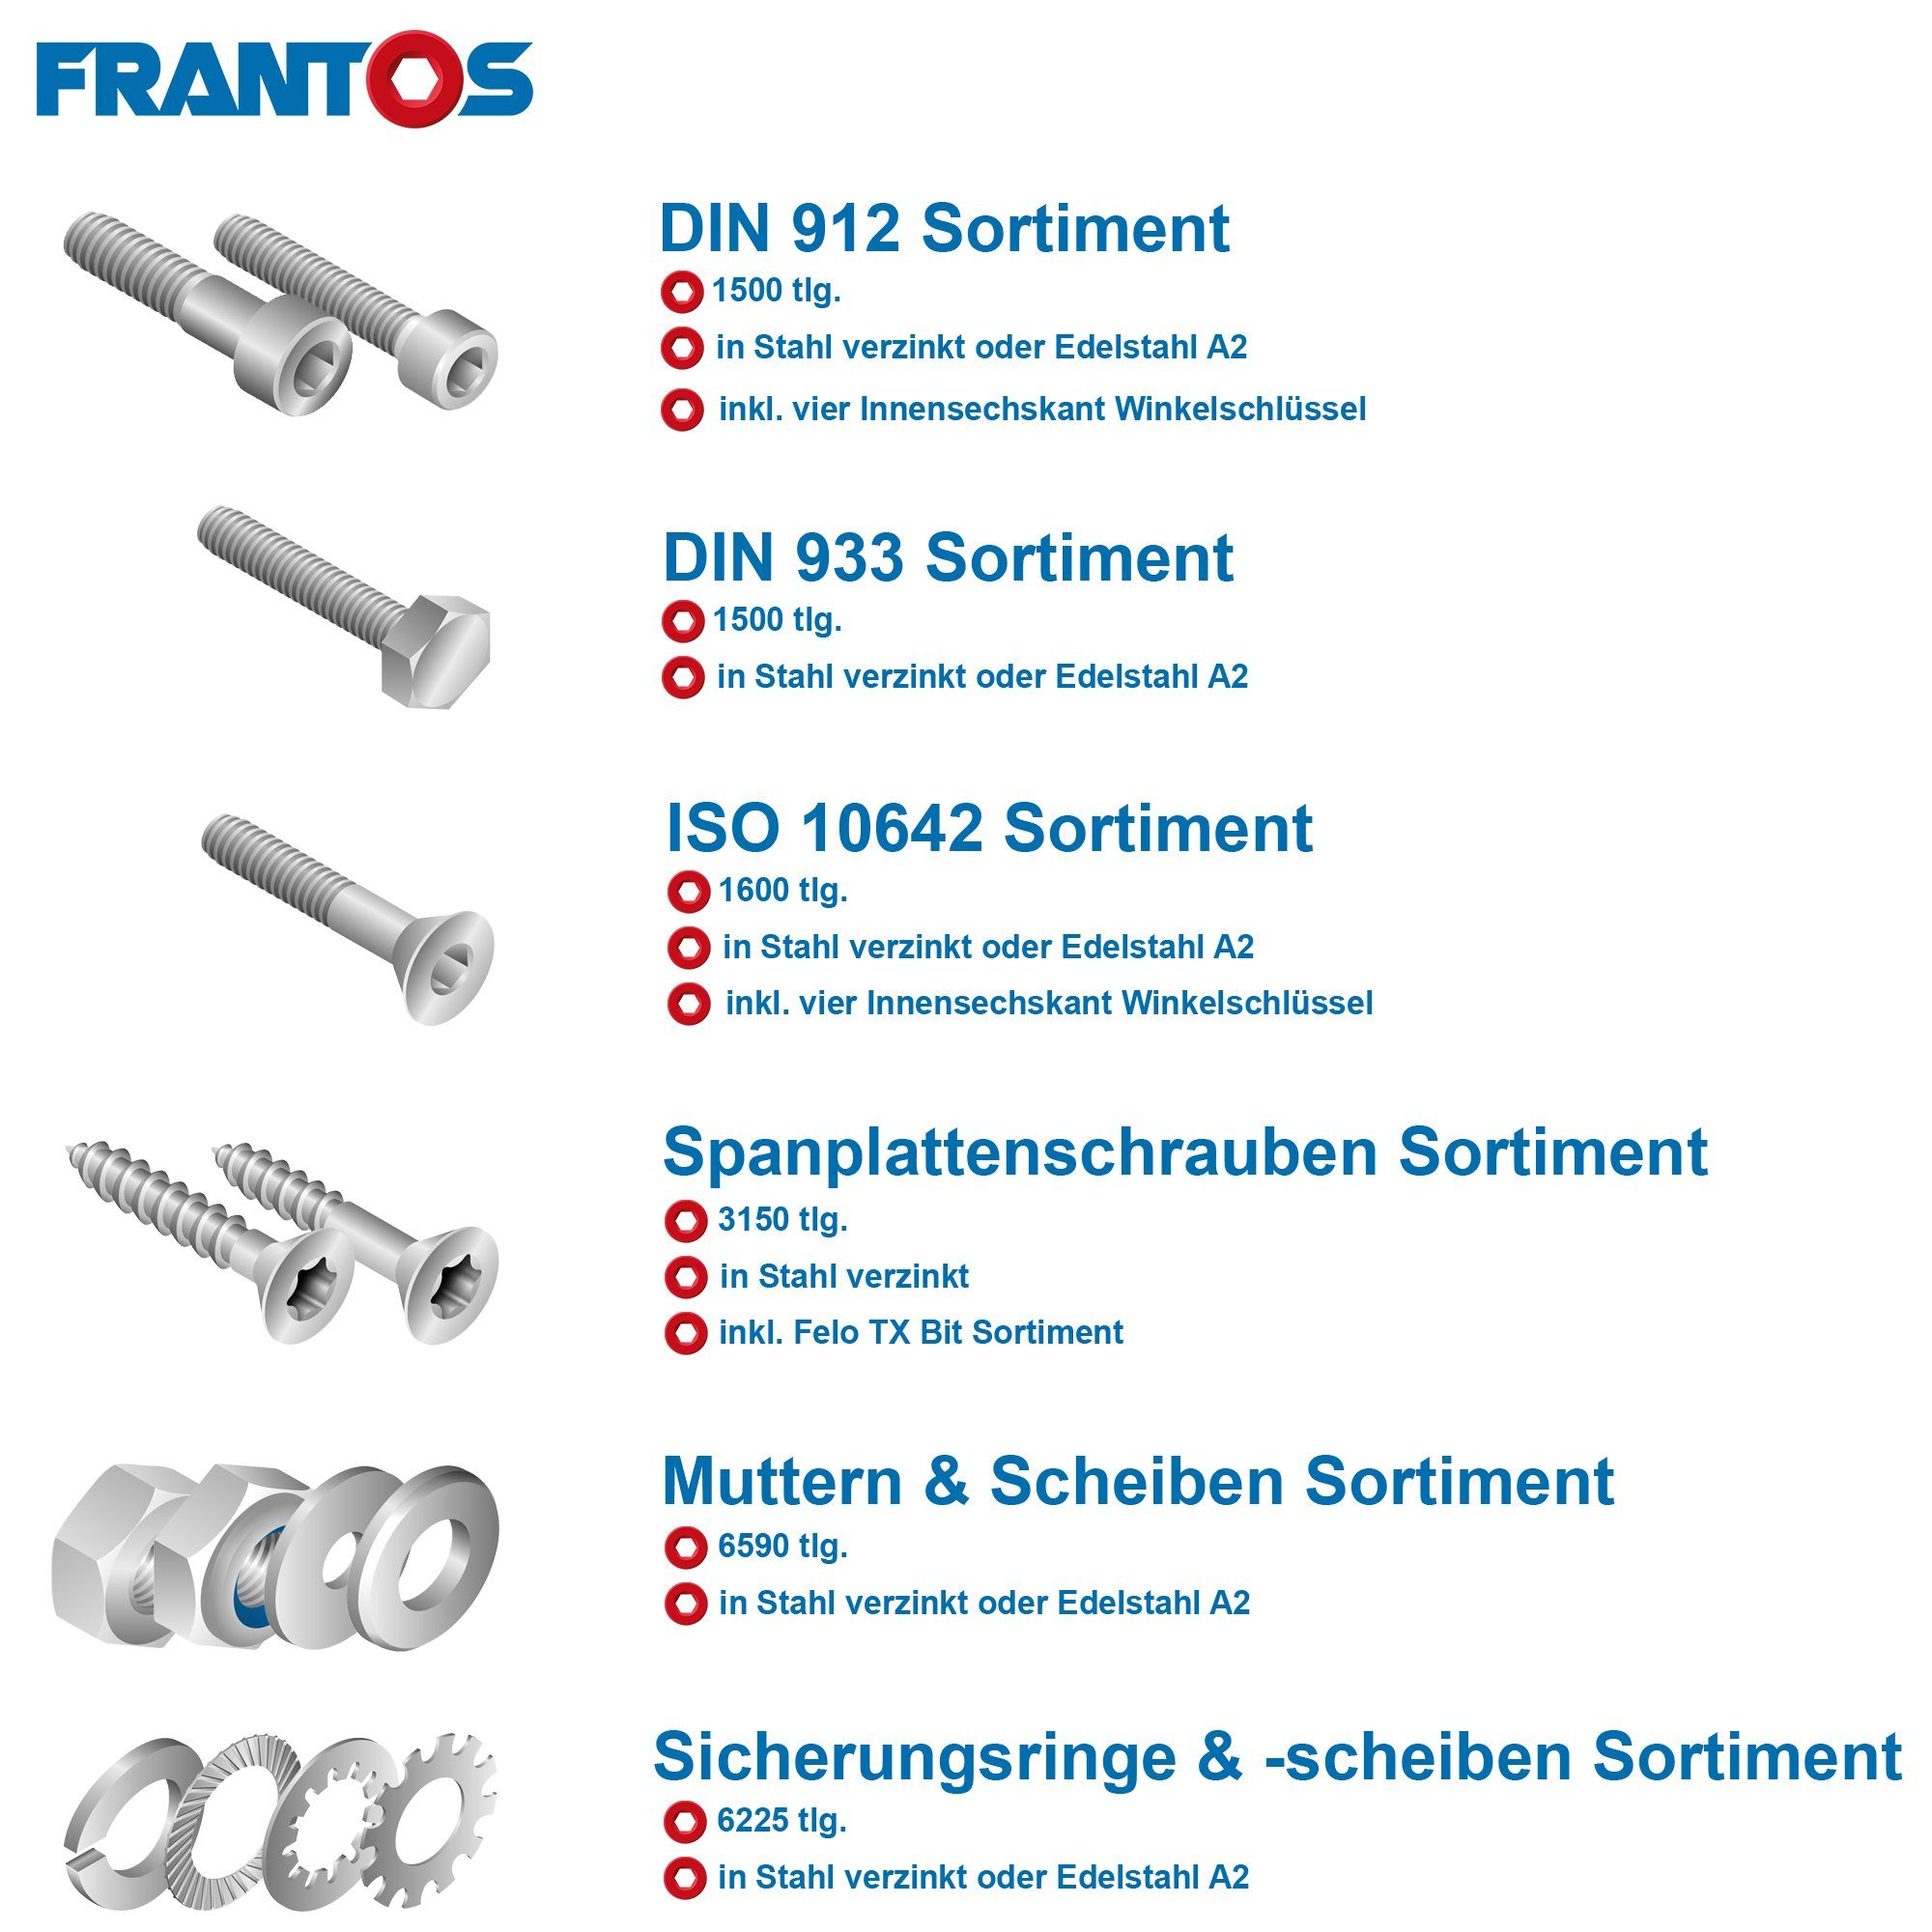 FRANTOS Schrauben-Set Zylinderschrauben DIN 912 Schraubensortiment 1500 verzinkt), Edelstahl St., - A2 (1504 / 8.8 Zylinderkopfschrauben, Stahl L-Boxx teilig in